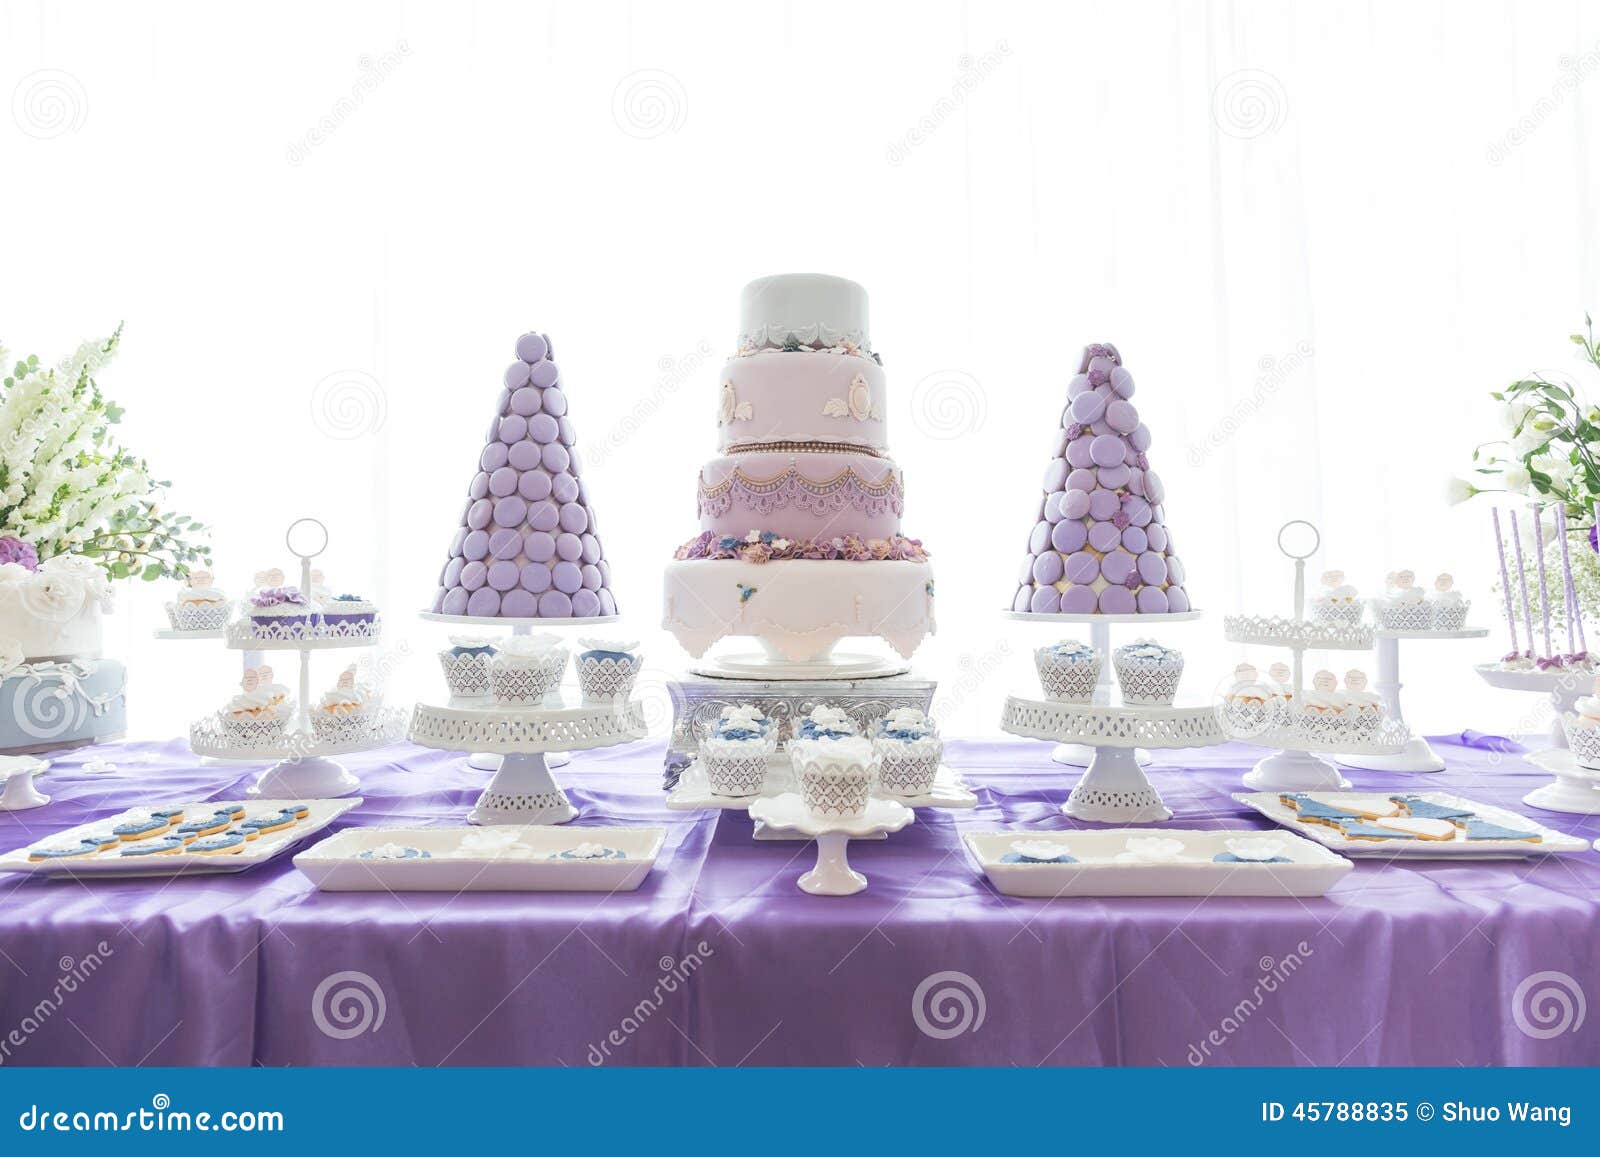  Wedding  Cakes  Stock Photo Image 45788835